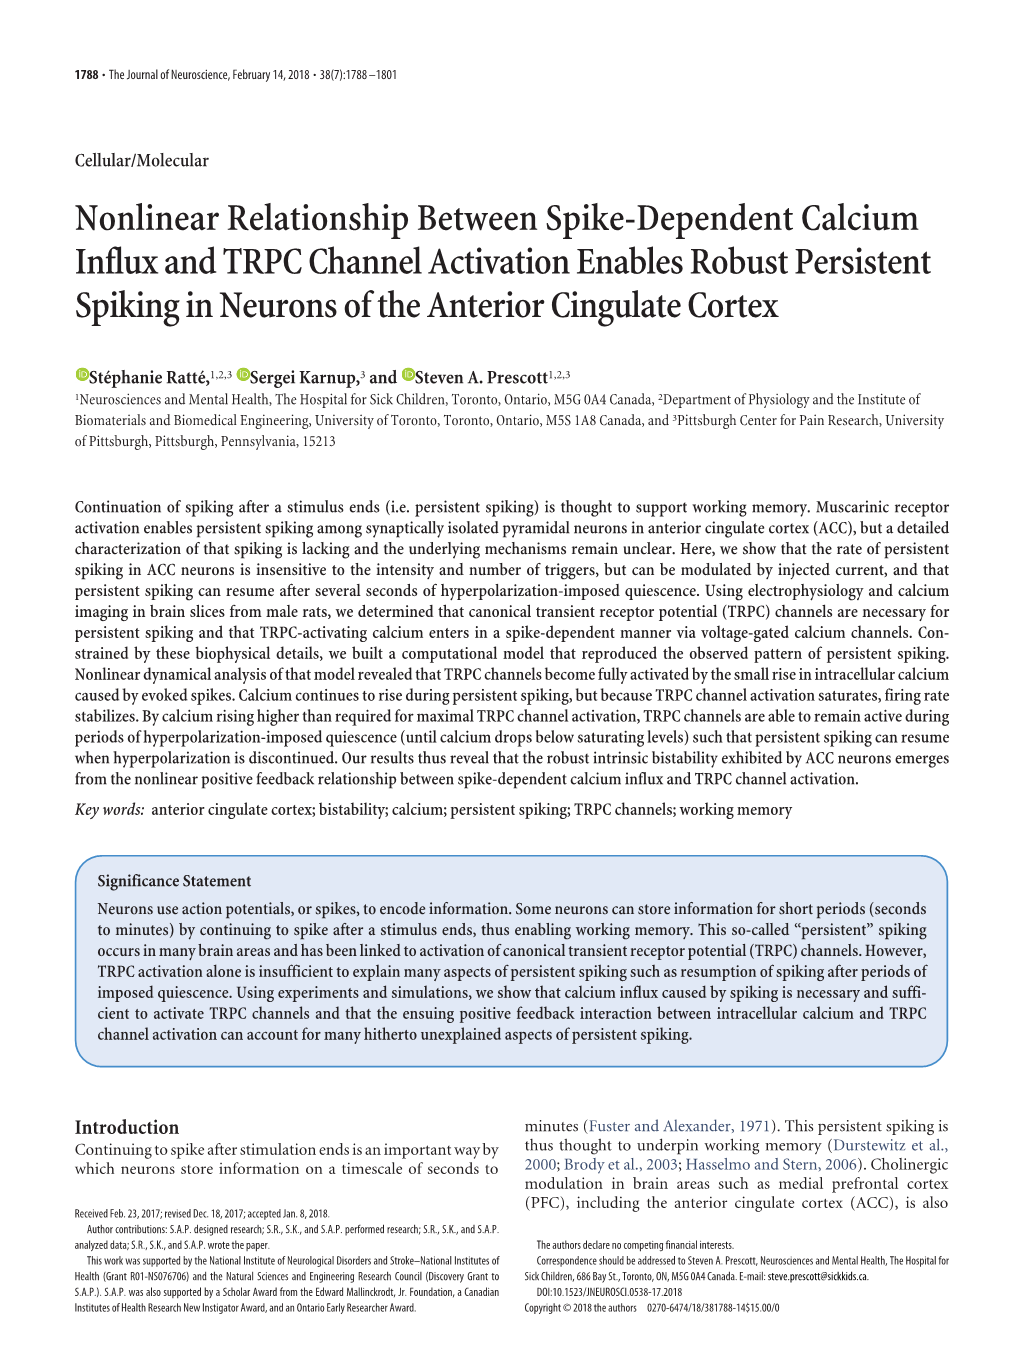 Nonlinear Relationship Between Spike-Dependent Calcium Influx